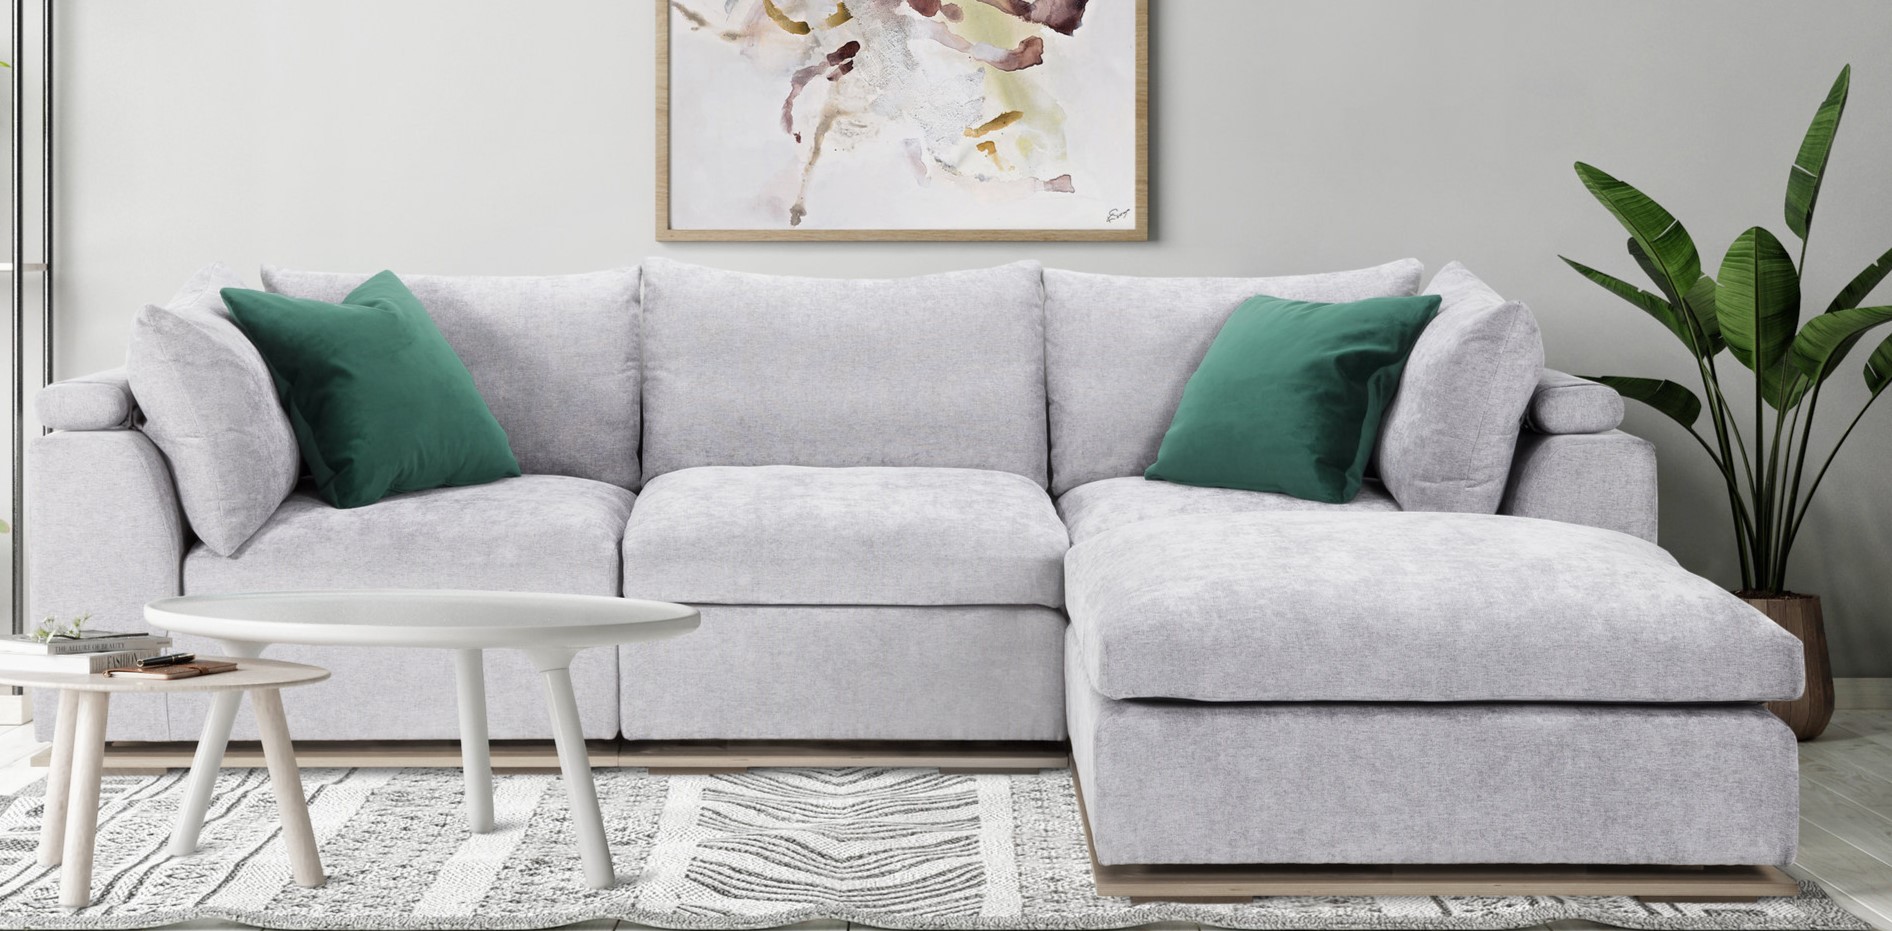 В качестве акцентов можно использовать зеленые подушки для декора серого дивана 